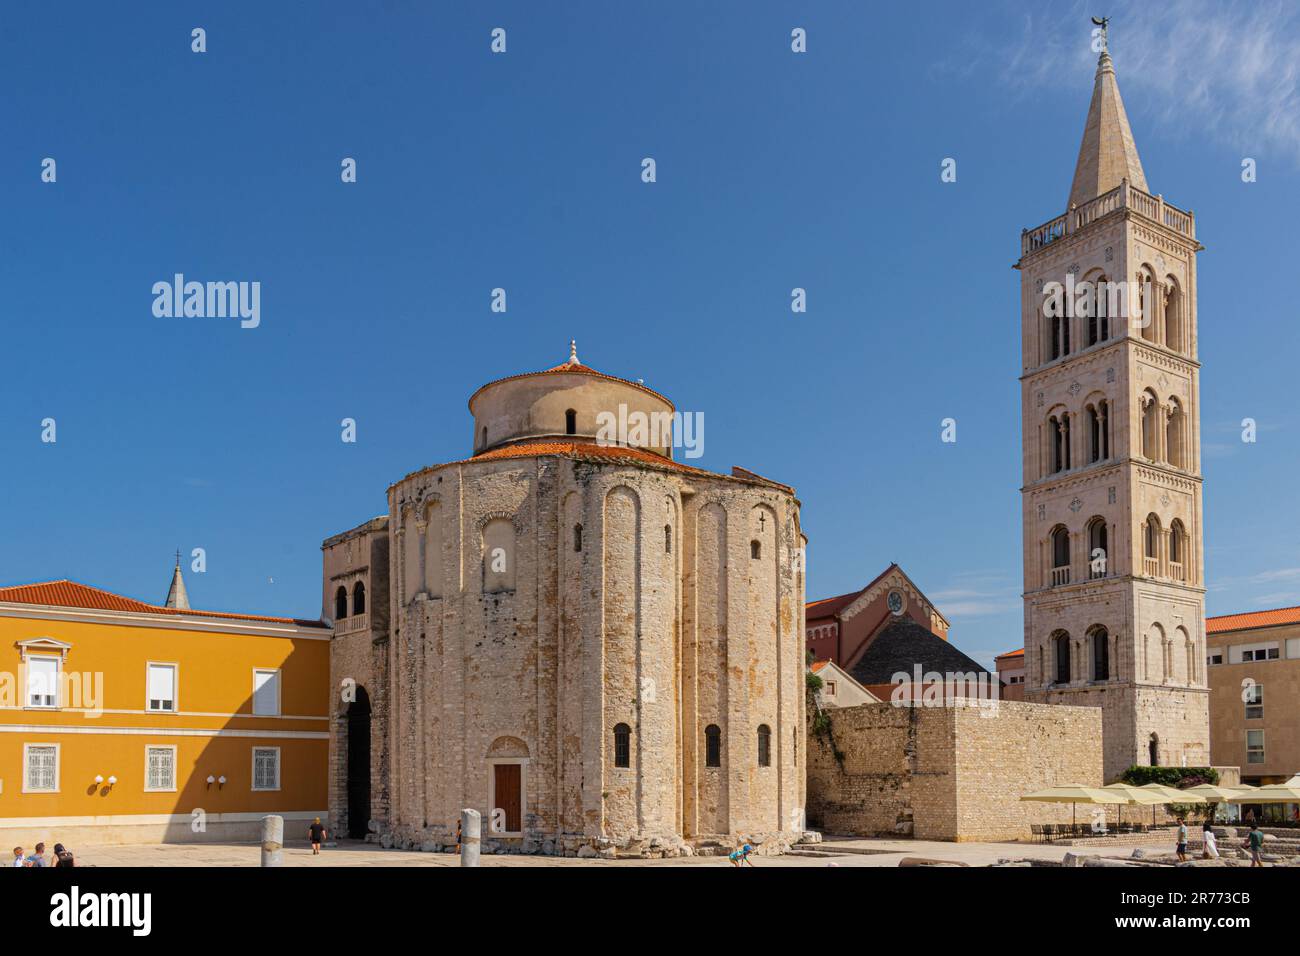 L'église de St Donatus et le clocher de la cathédrale de Zadar dans la ville de Zadar en Croatie Banque D'Images